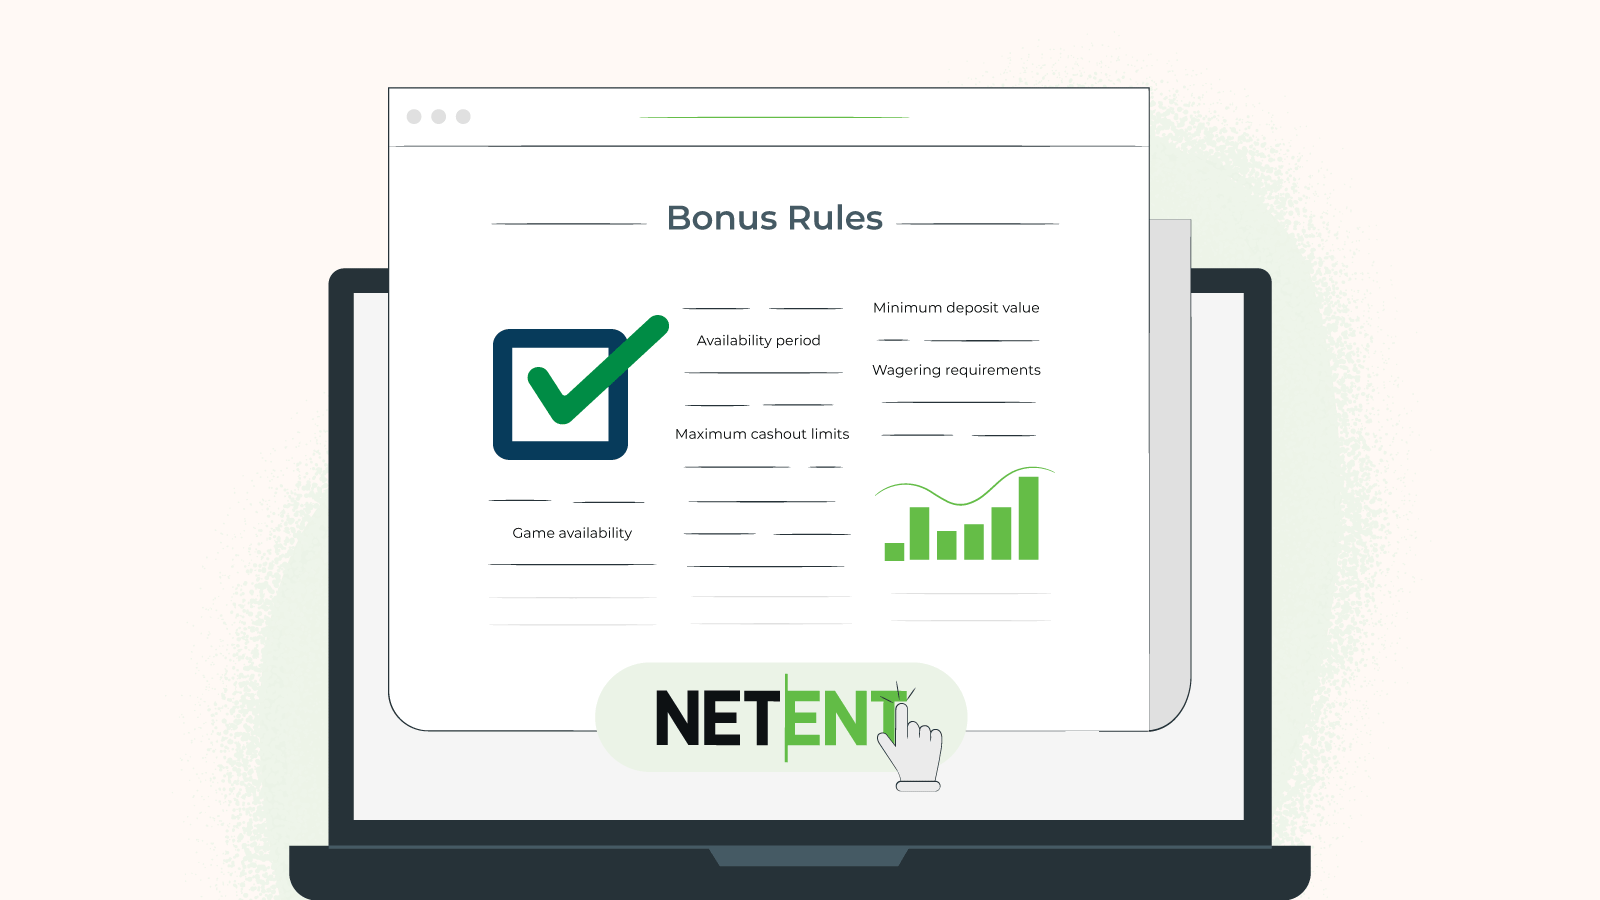 Stay informed of NetEnt bonus rules